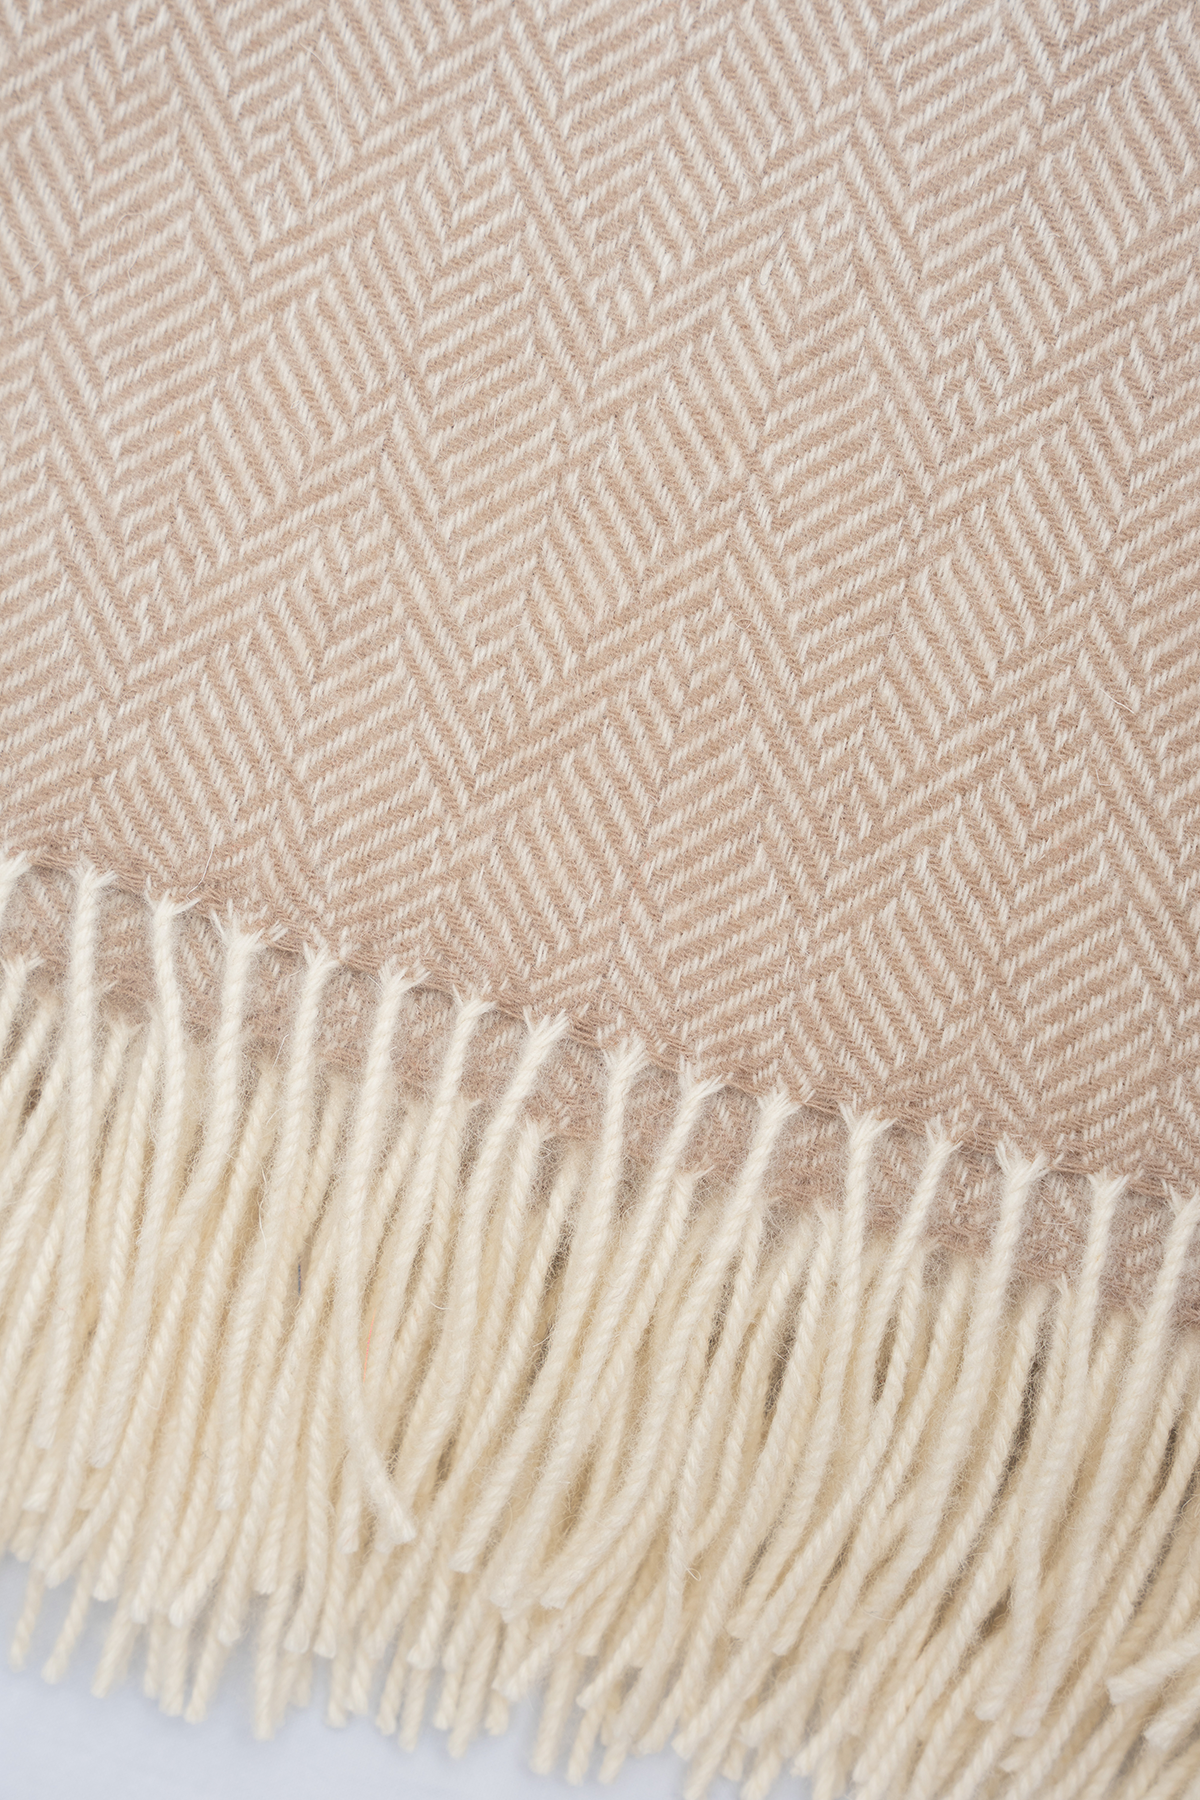 Beige Herringbone Pattern Wool Throw